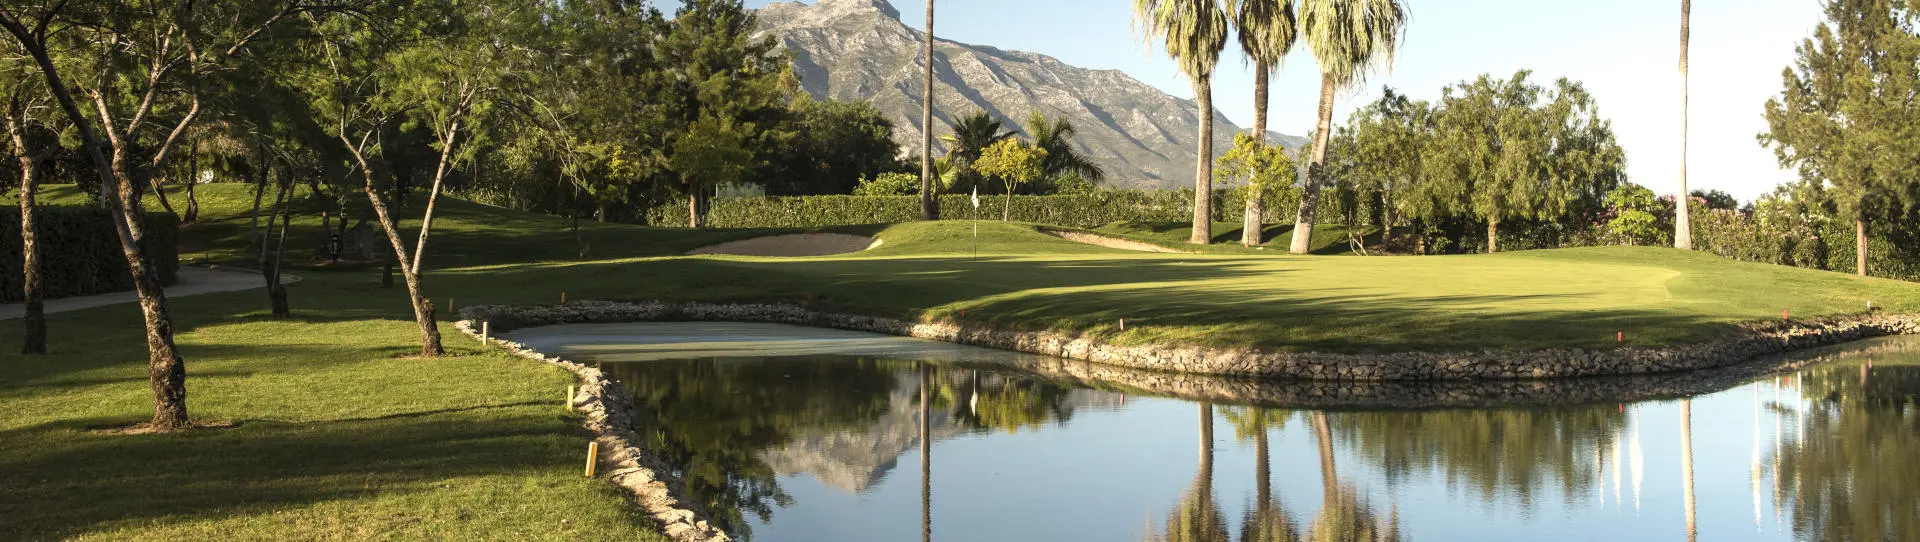 Spain golf courses - La Quinta Golf Course - Photo 3